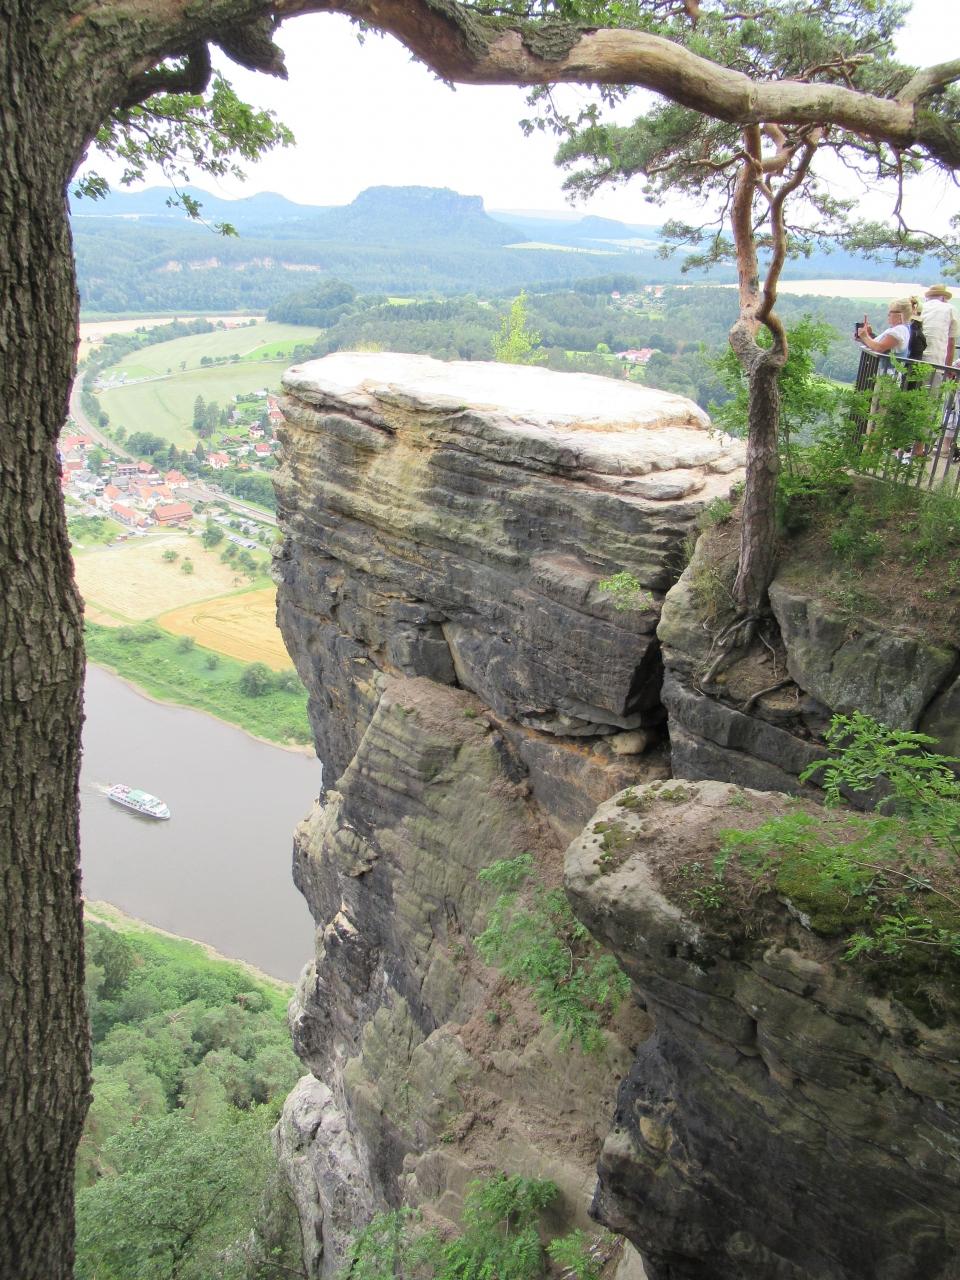 ドイツ周遊の旅 5日目 奇岩の絶景 ザクセンスイス ザクセン州 ドイツ の旅行記 ブログ By 実結樹さん フォートラベル